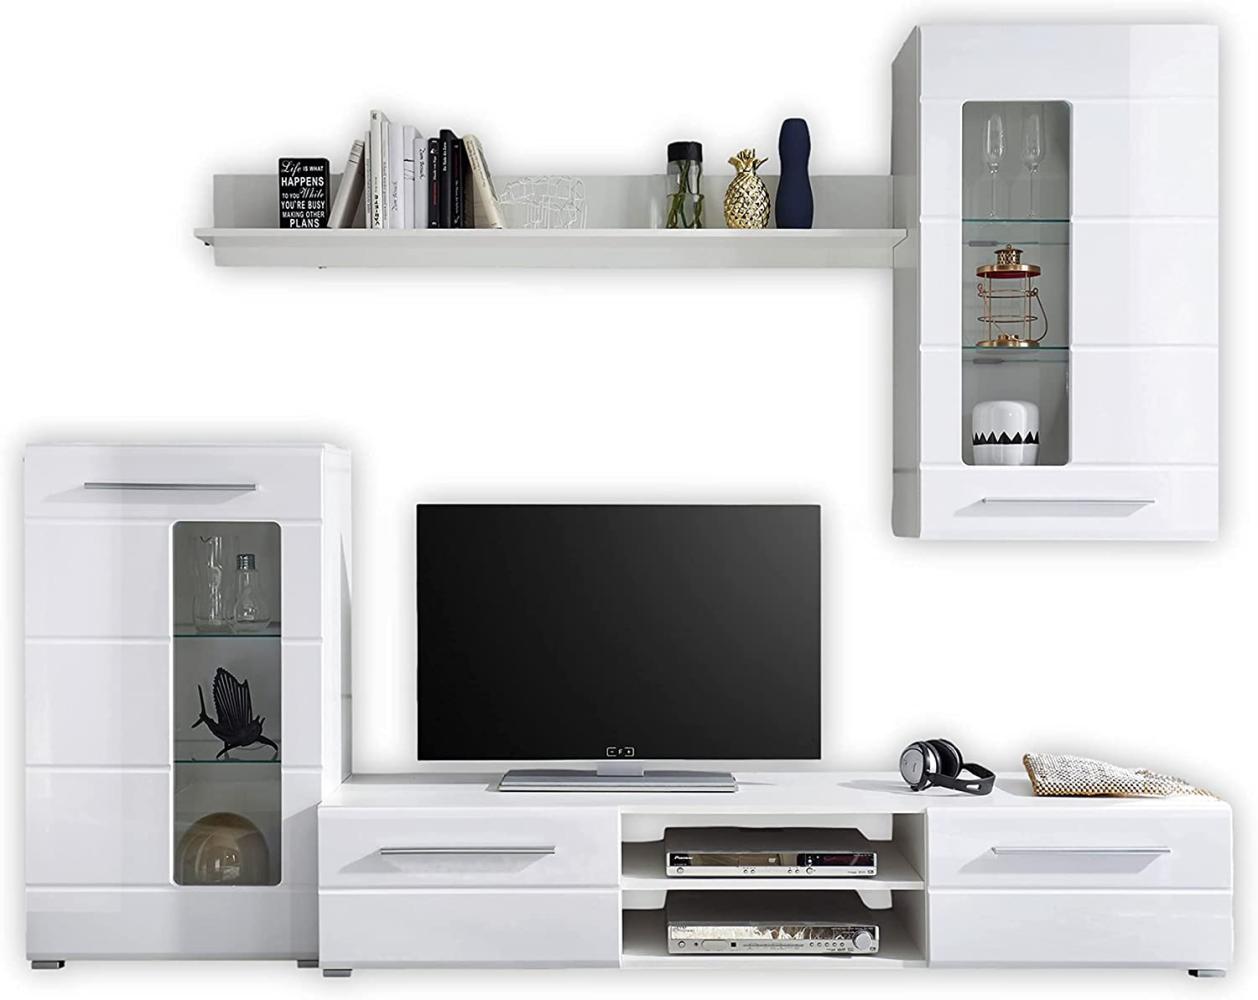 Stella Trading ENRIQUE Wohnwand Komplett-Set in Hochglanz Weiß - Moderne Schrankwand mit schöner LED-Beleuchtung für Ihr Wohnzimmer - 240 x 190 x 42 cm (B/H/T) Bild 1